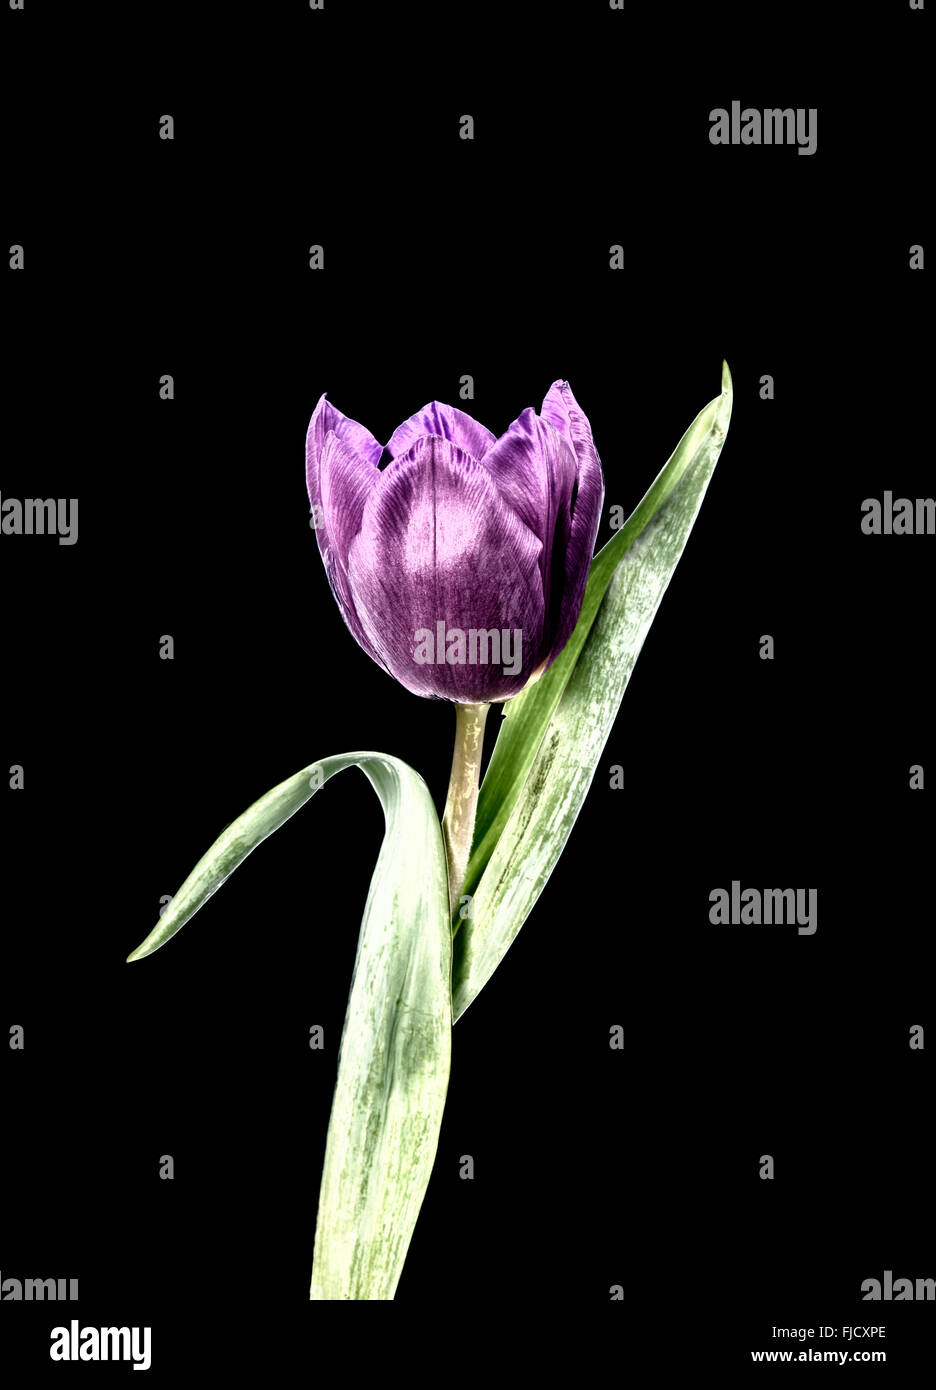 Una Fotografia manipolata digitalmente di un viola tulip flower contro uno sfondo nero Foto Stock